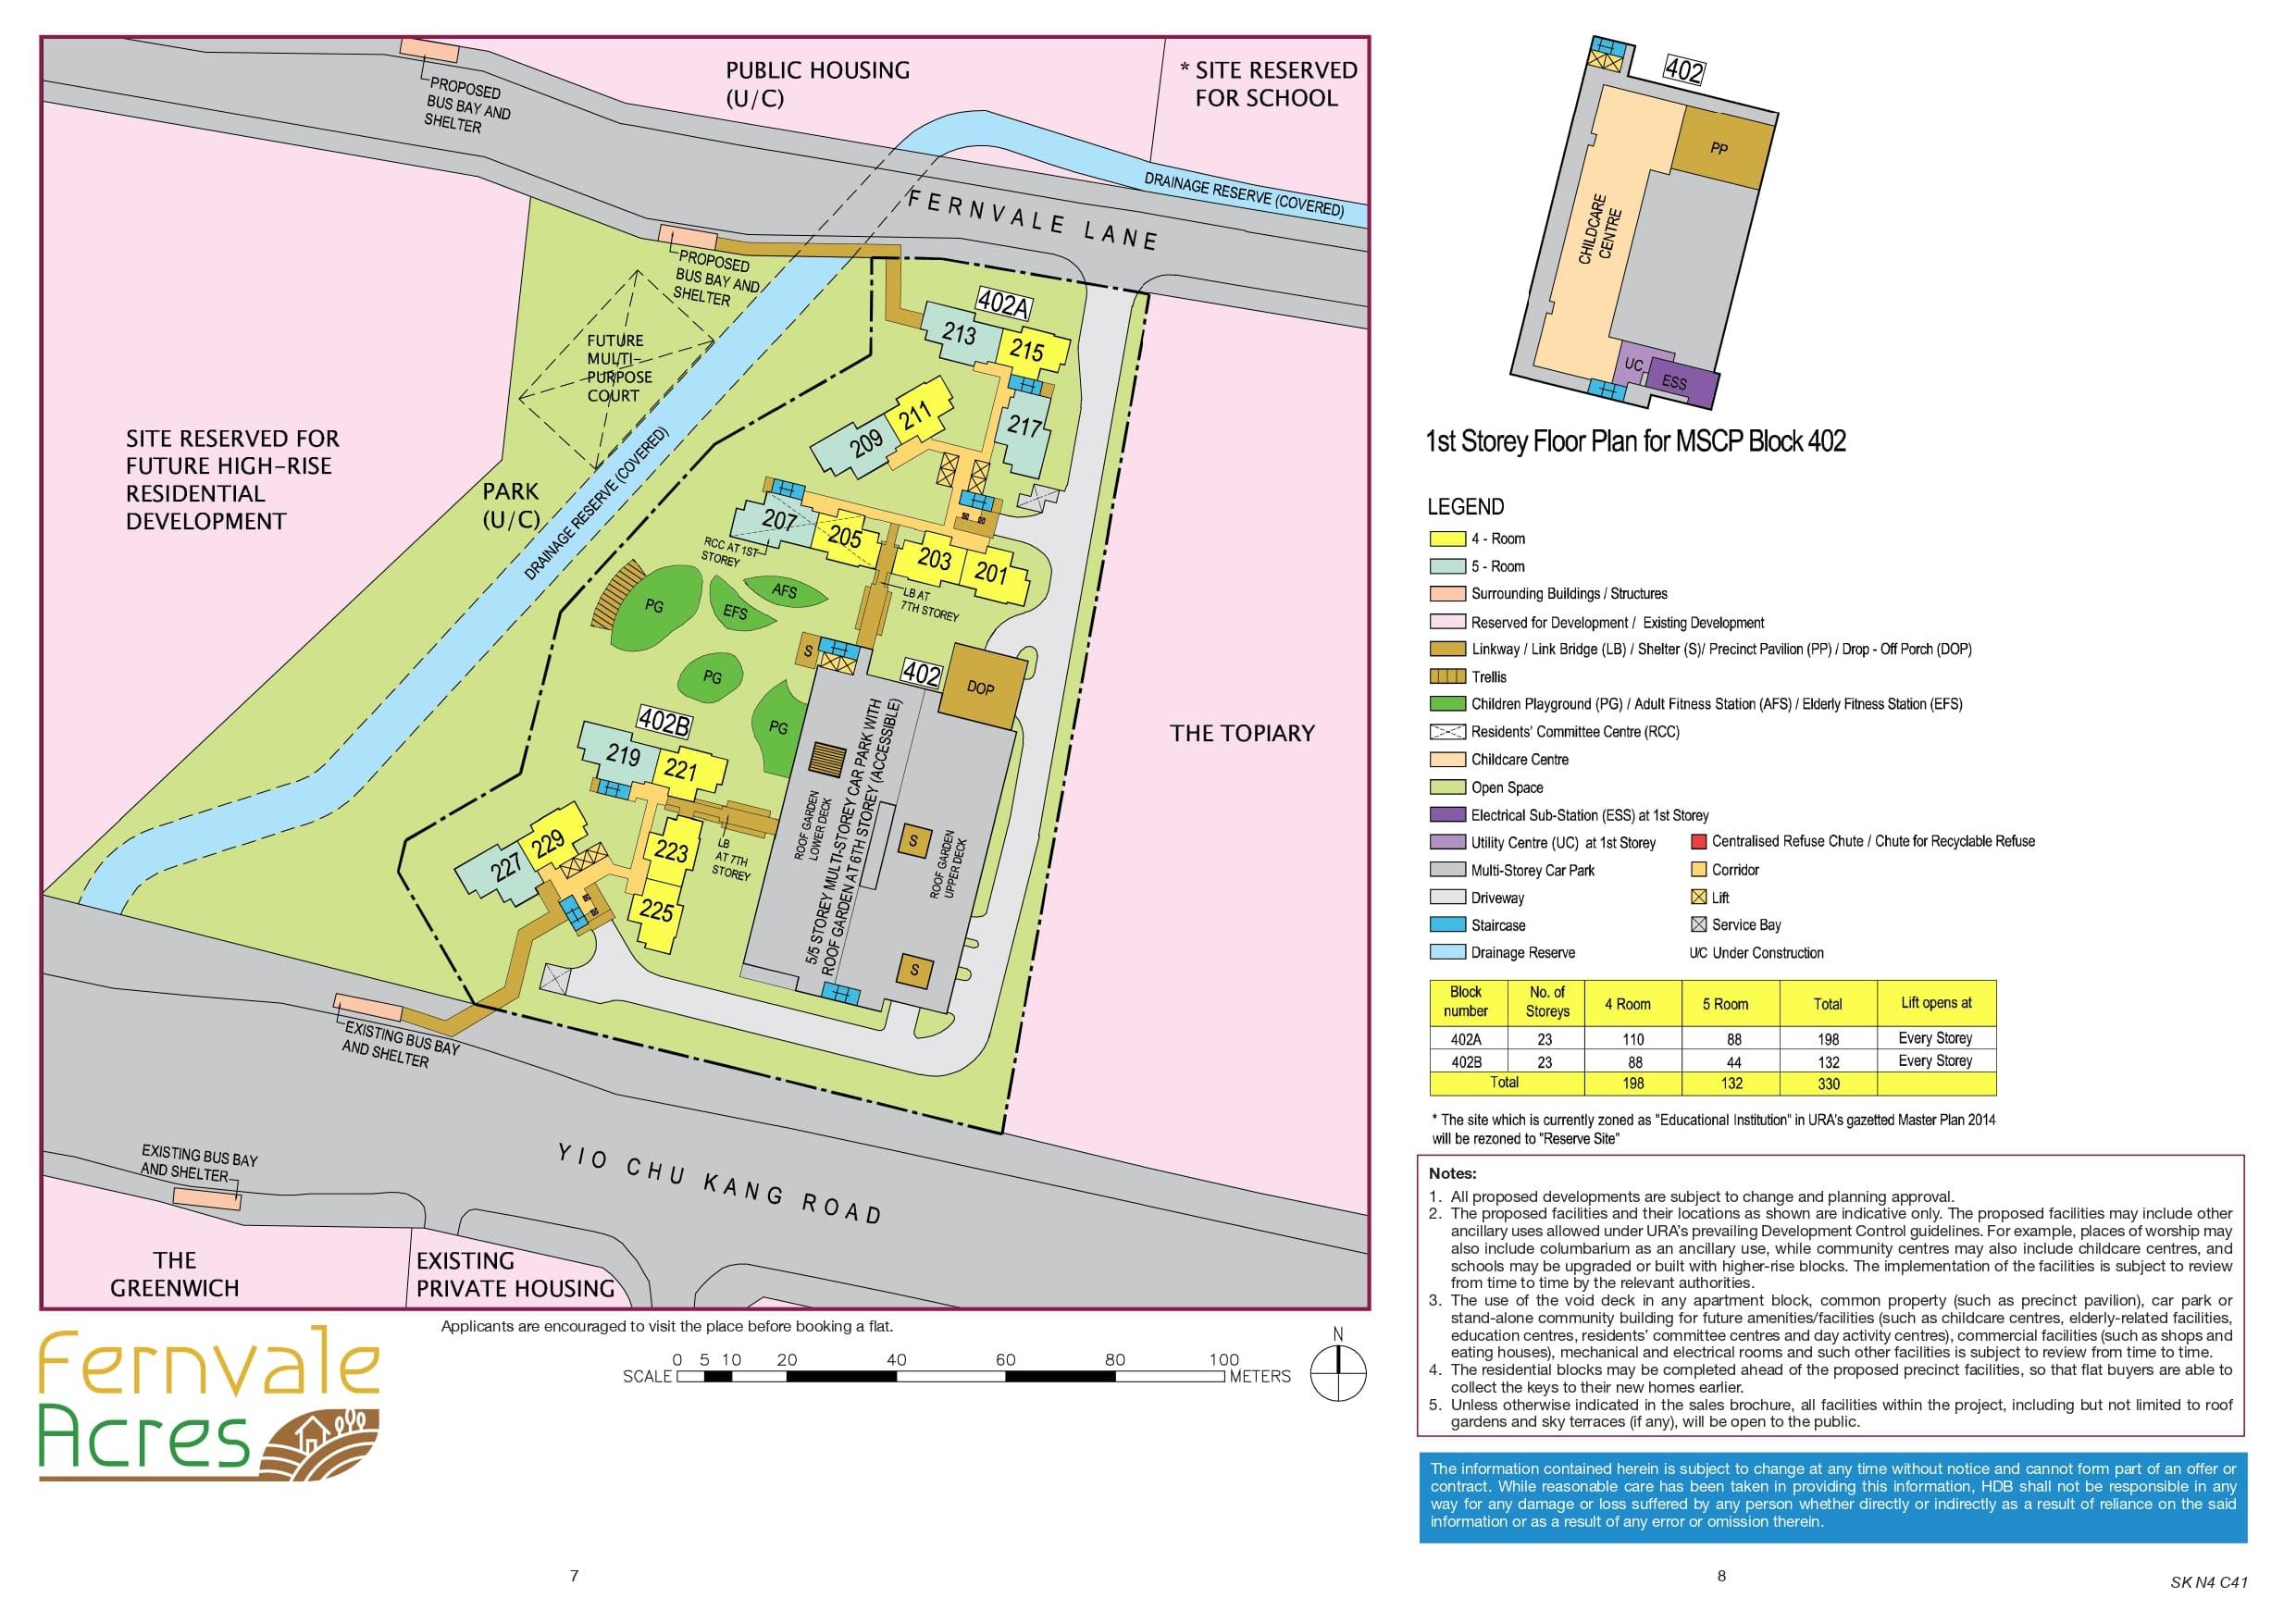 Fernvale Acres site-plan